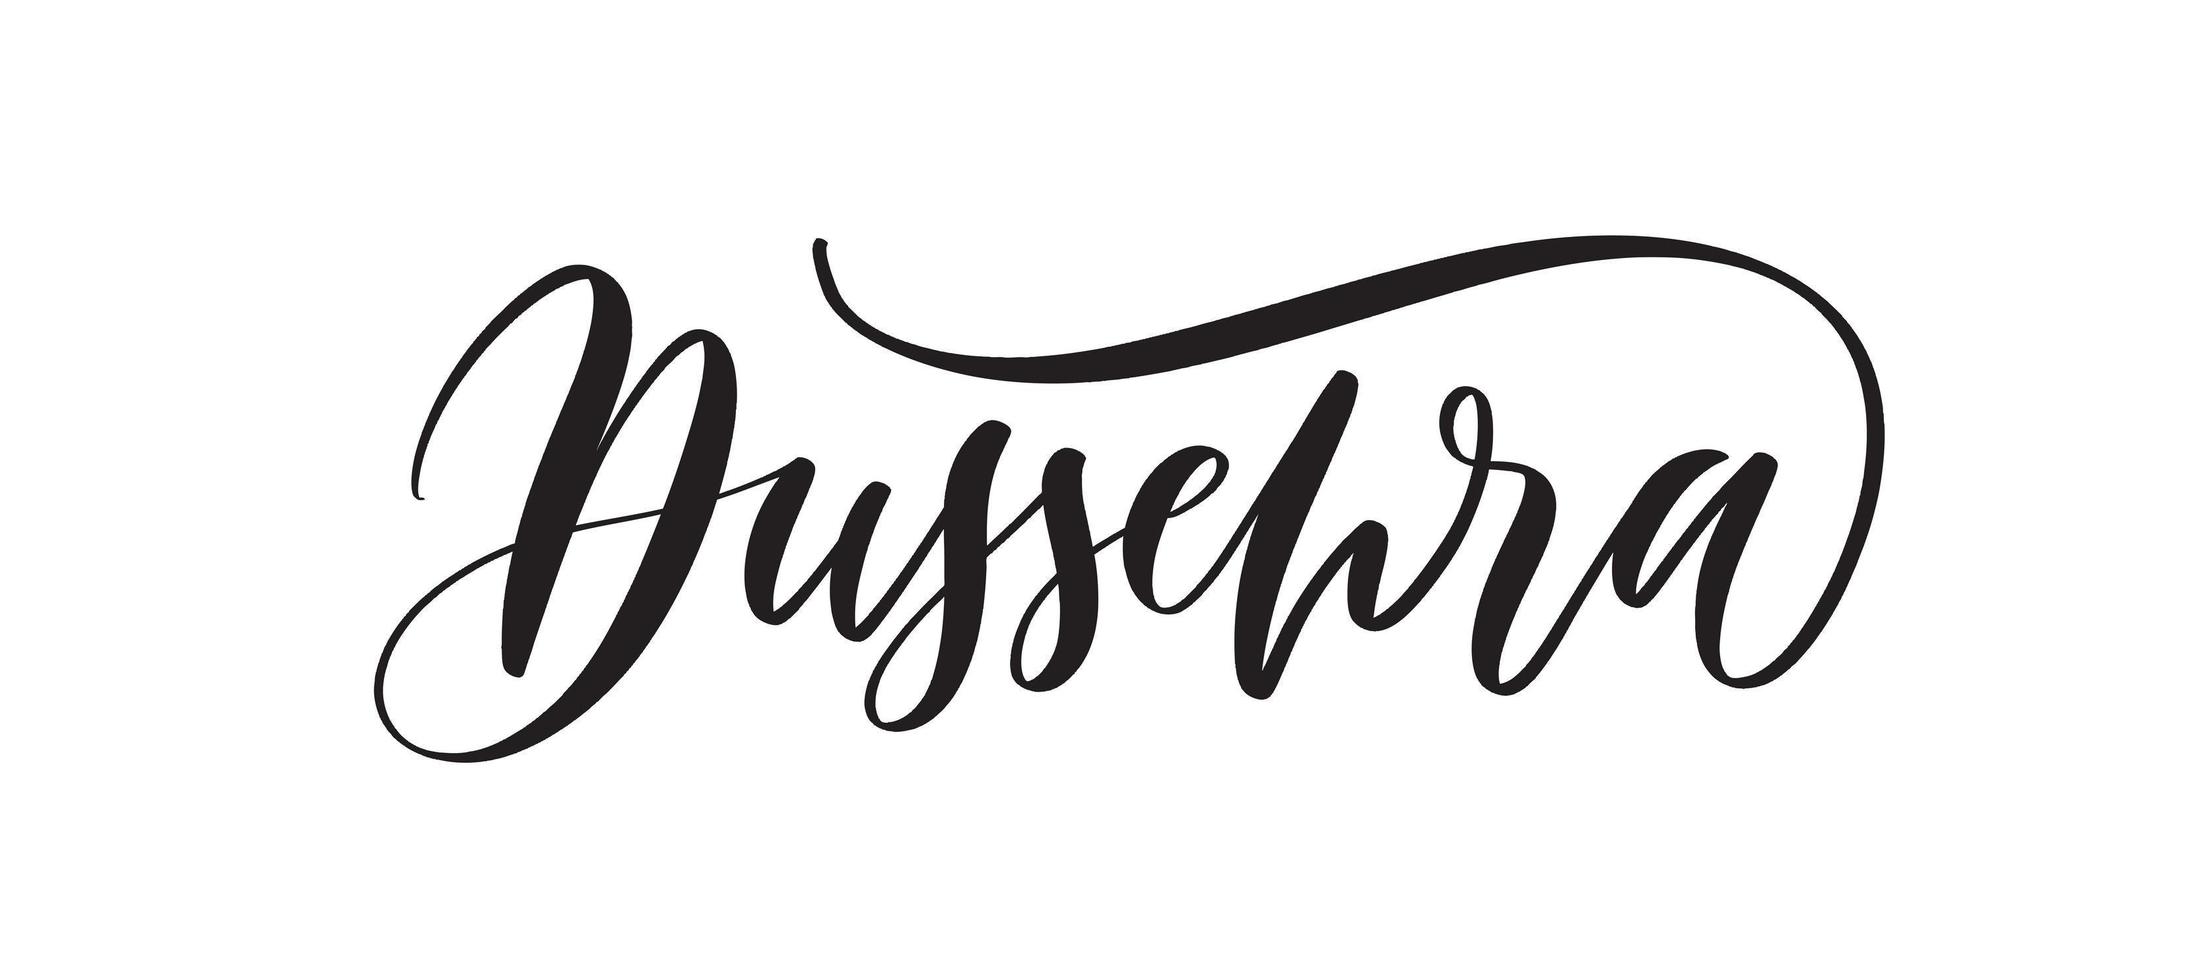 dussehra - citação de letras de tipografia, banner de caligrafia de pincel com linha fina. vetor